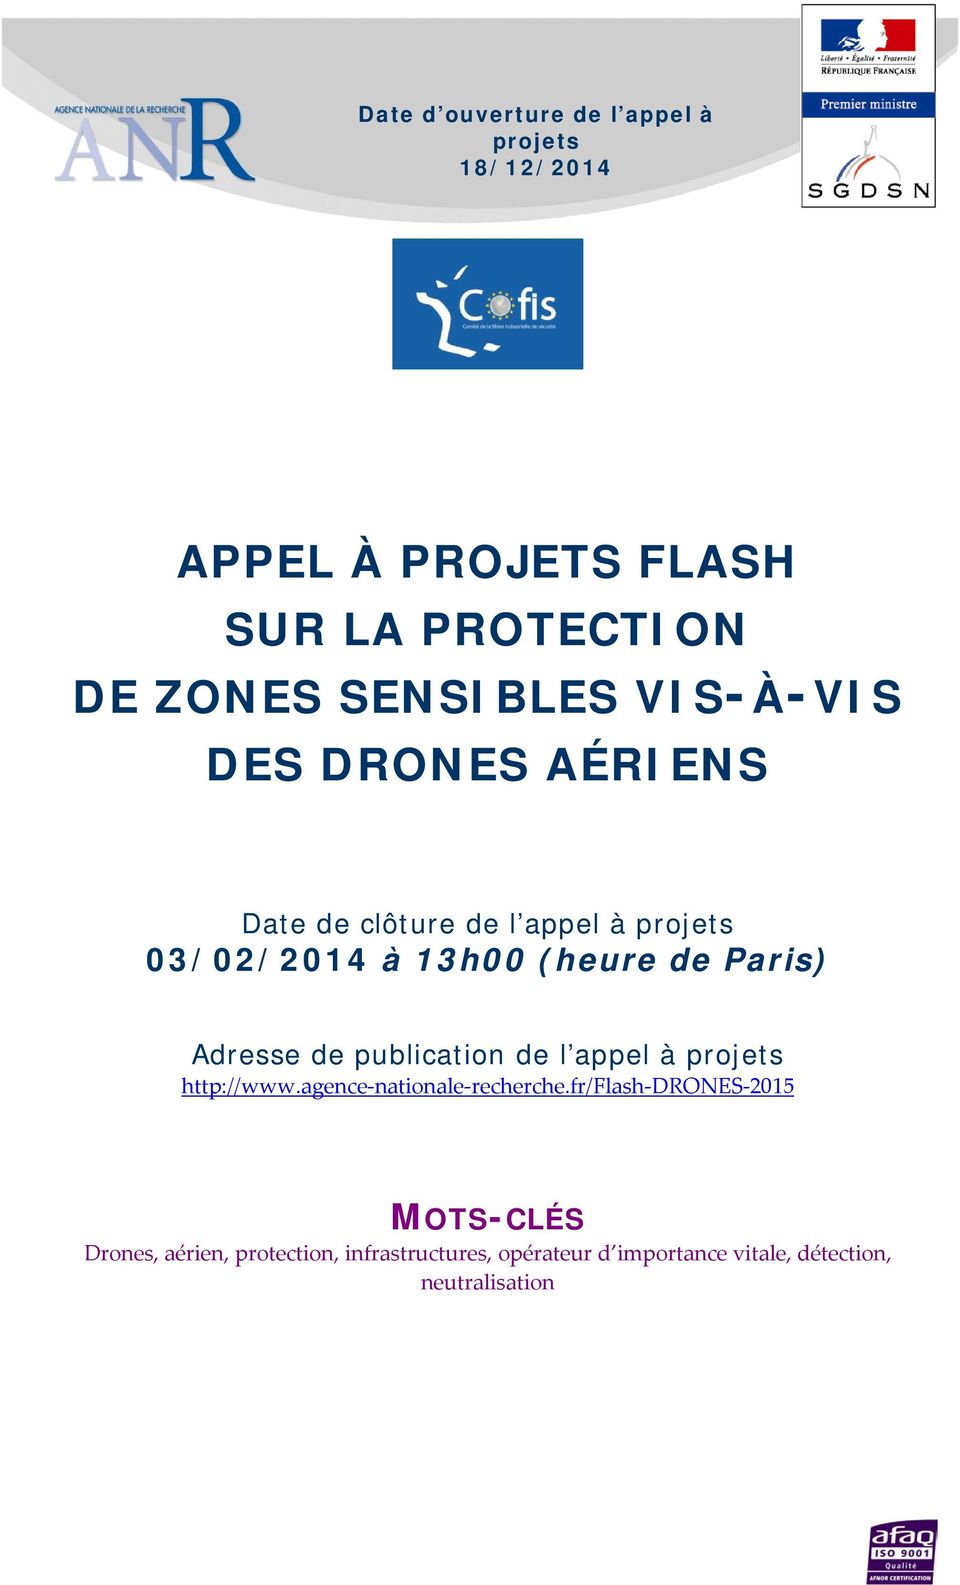 Paris) Adresse de publication de l appel à projets http://www.agence-nationale-recherche.